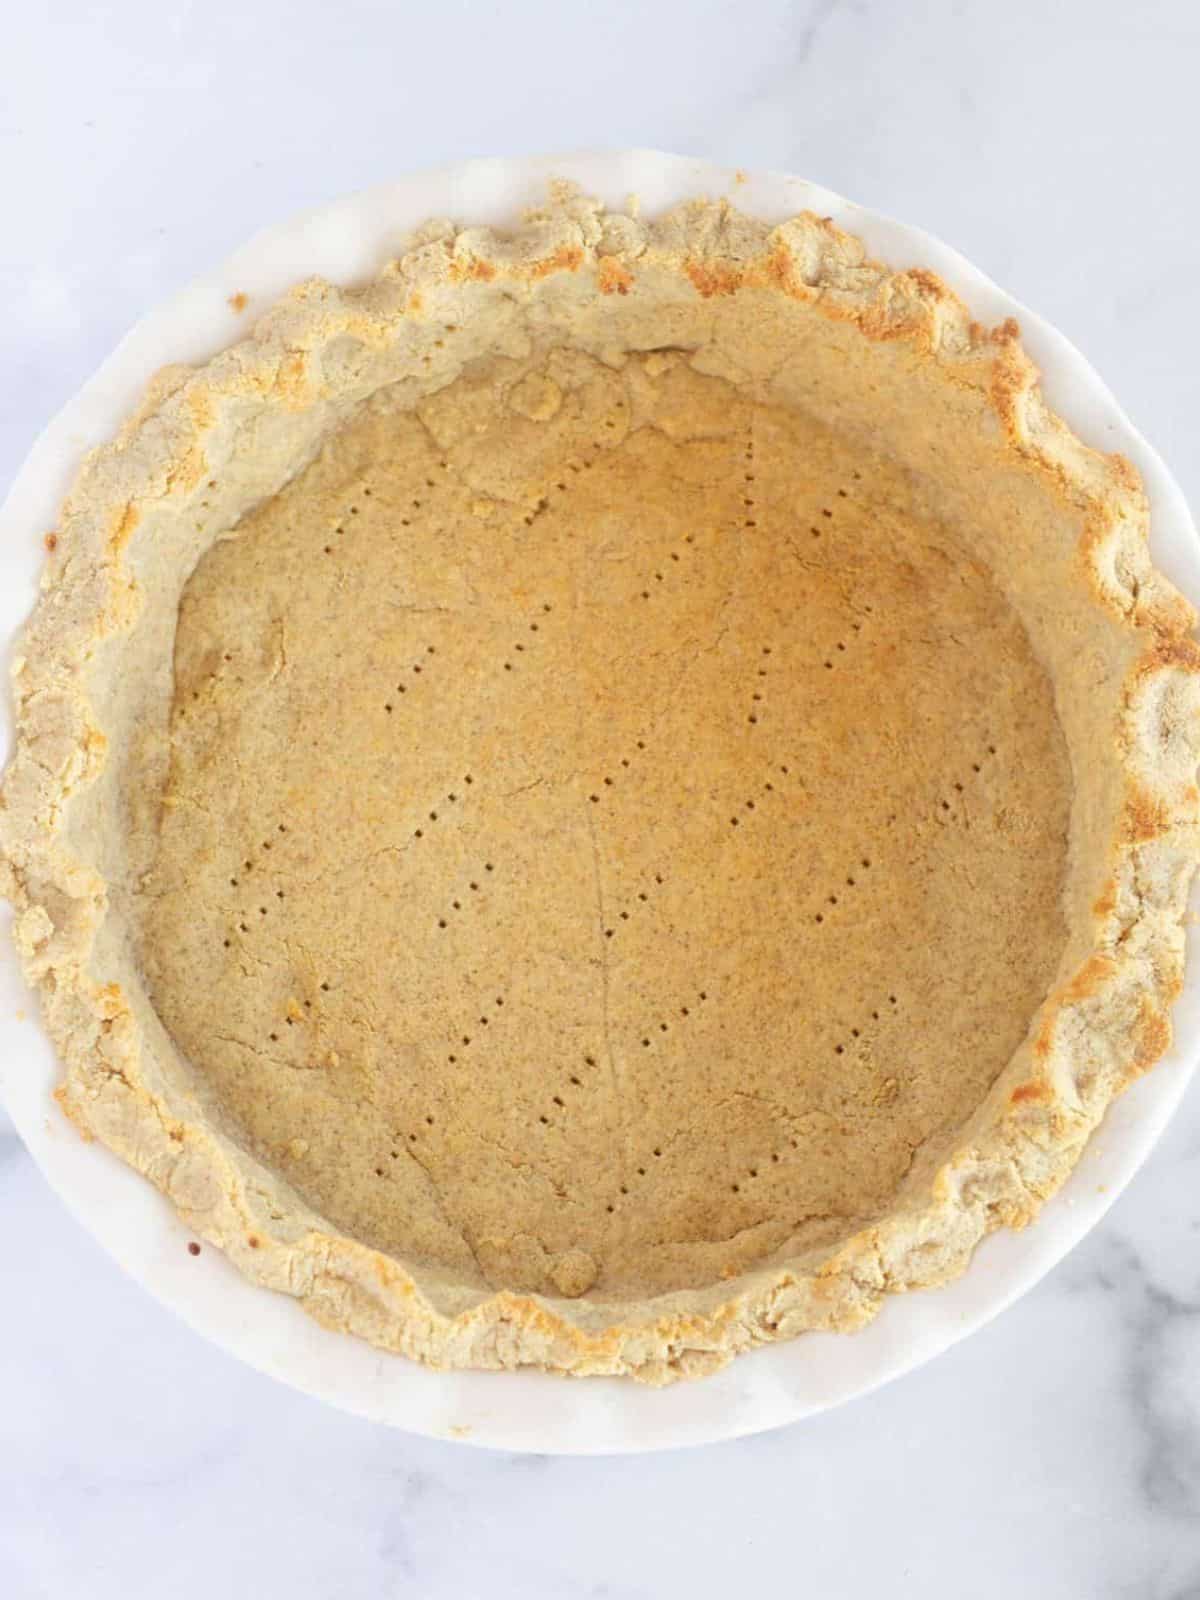 Par baked almond flour pie crust.